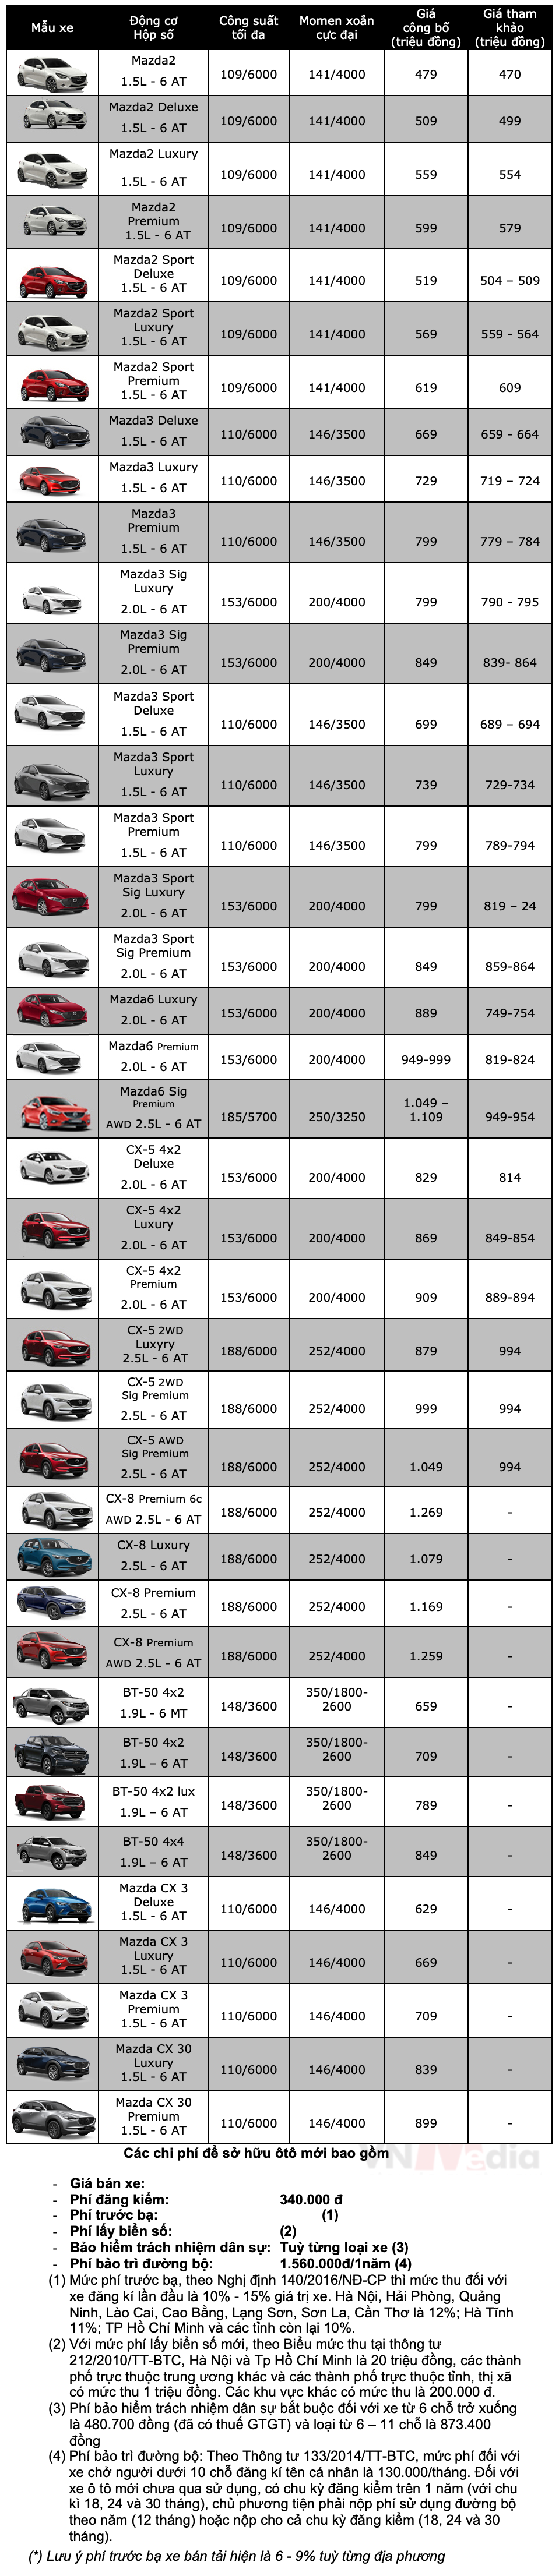 Bảng giá xe ô tô Mazda tháng 10/2022, ưu đãi đến 72 triệu đồng - ảnh 3